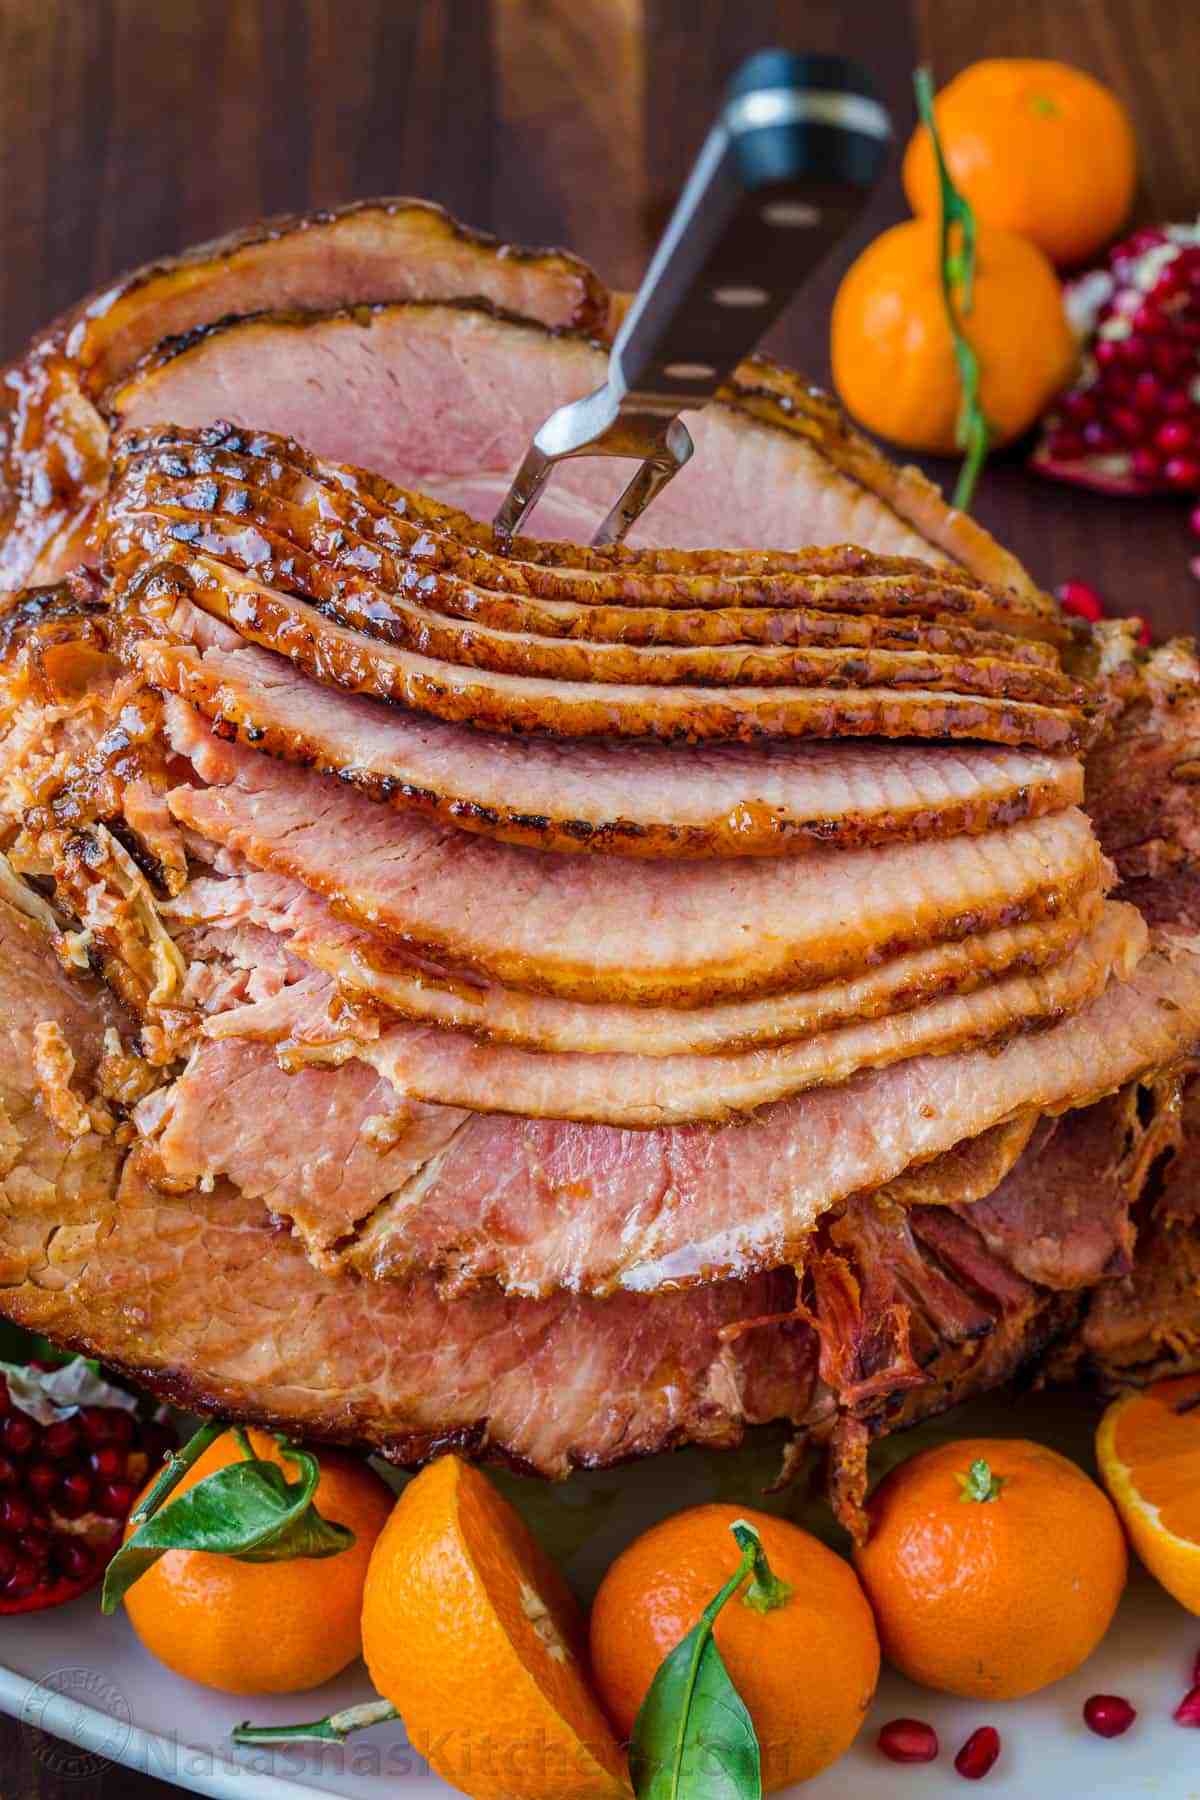 Is spiral ham better than regular ham?